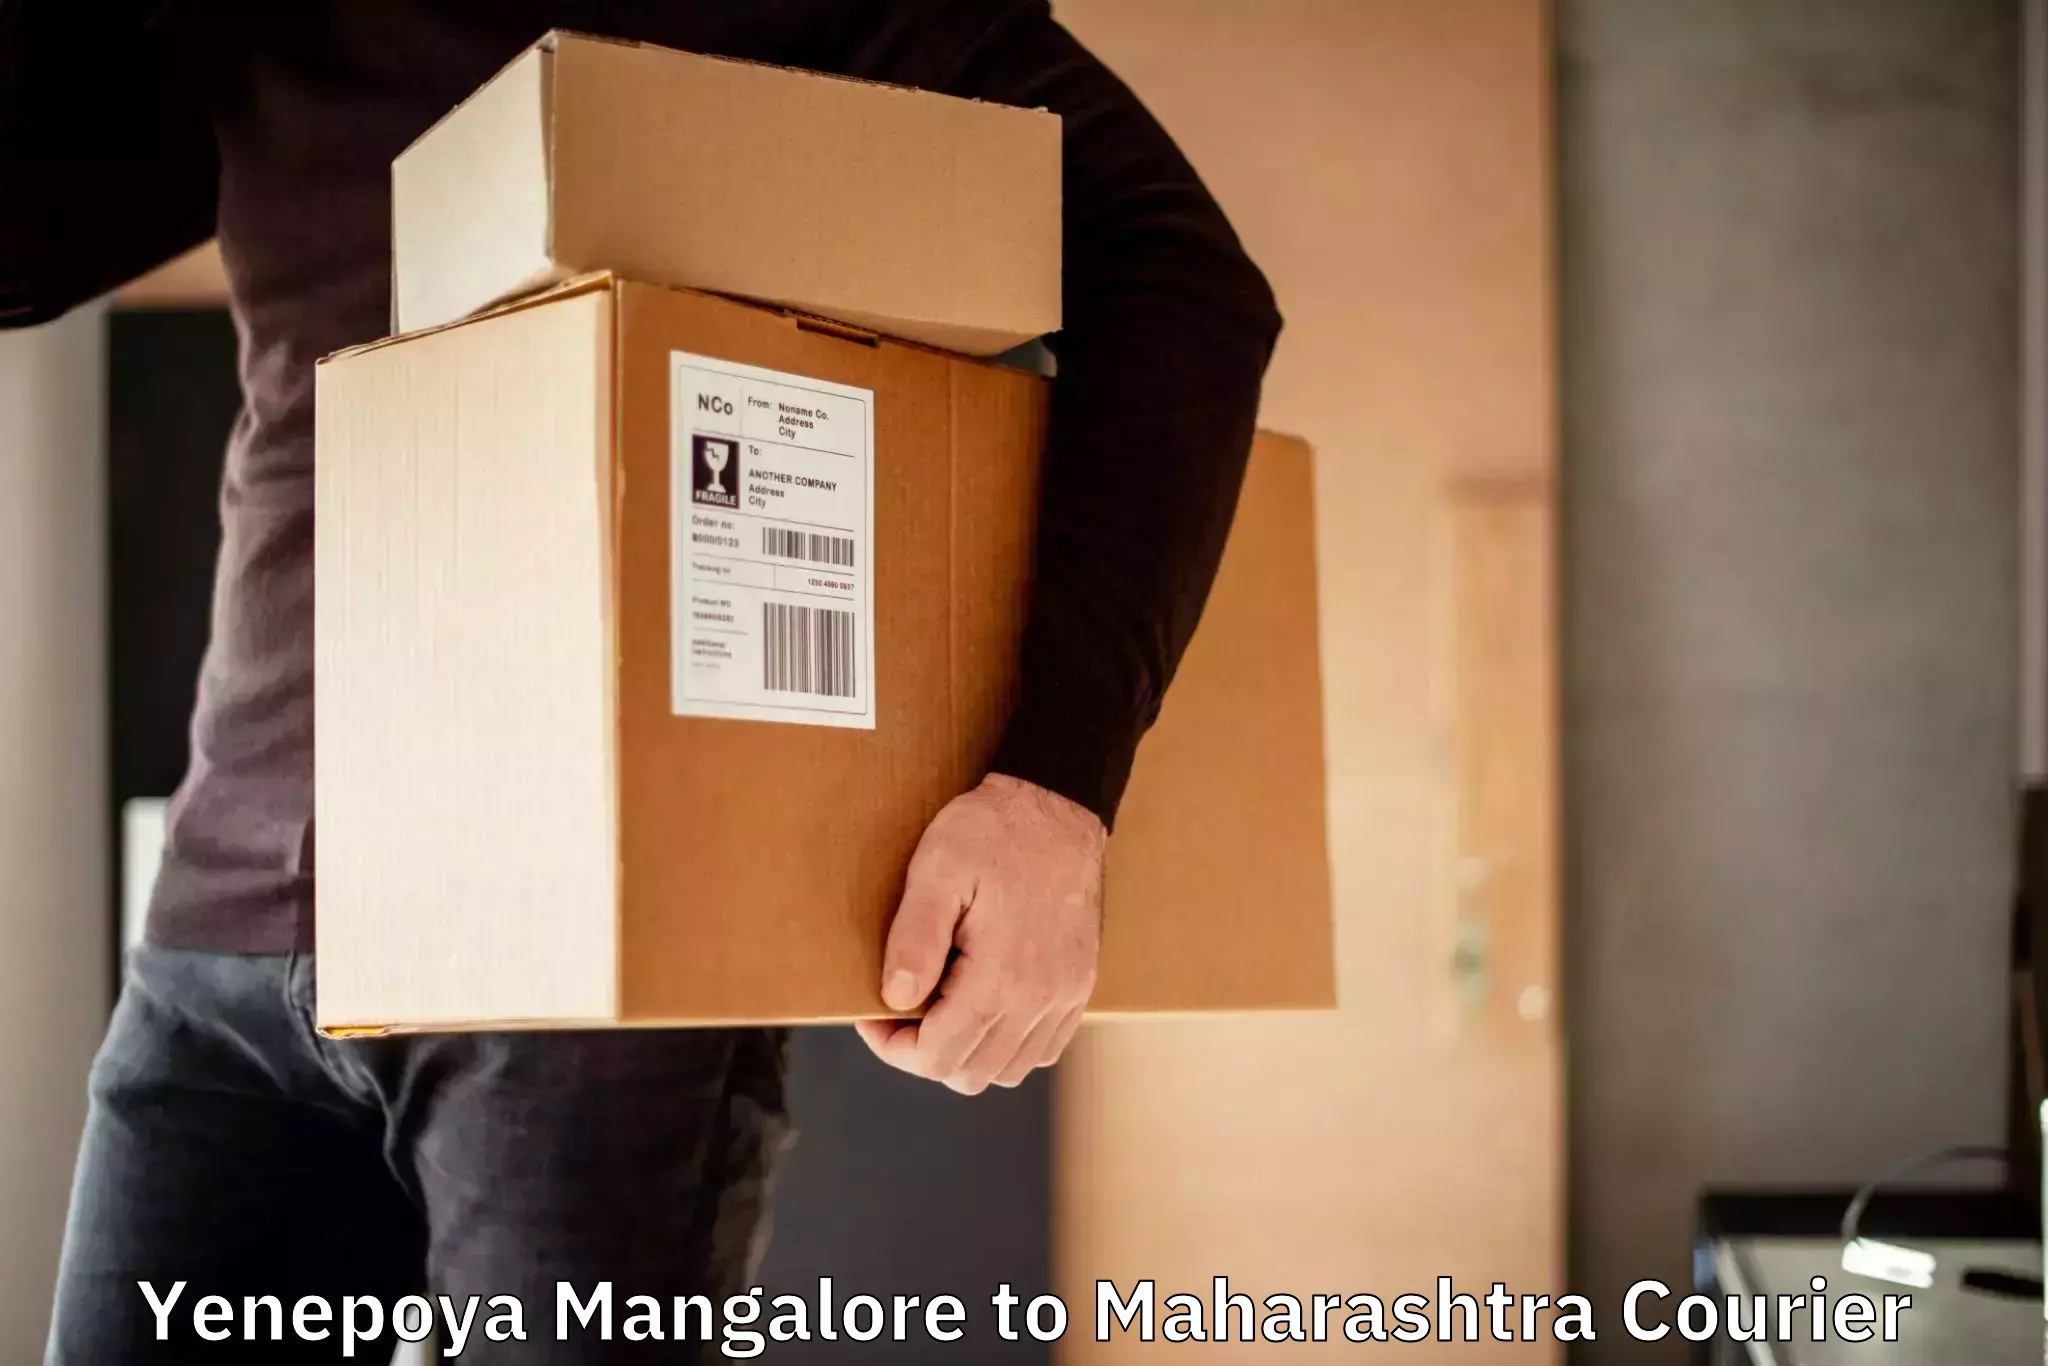 Customizable shipping options Yenepoya Mangalore to Nagpur